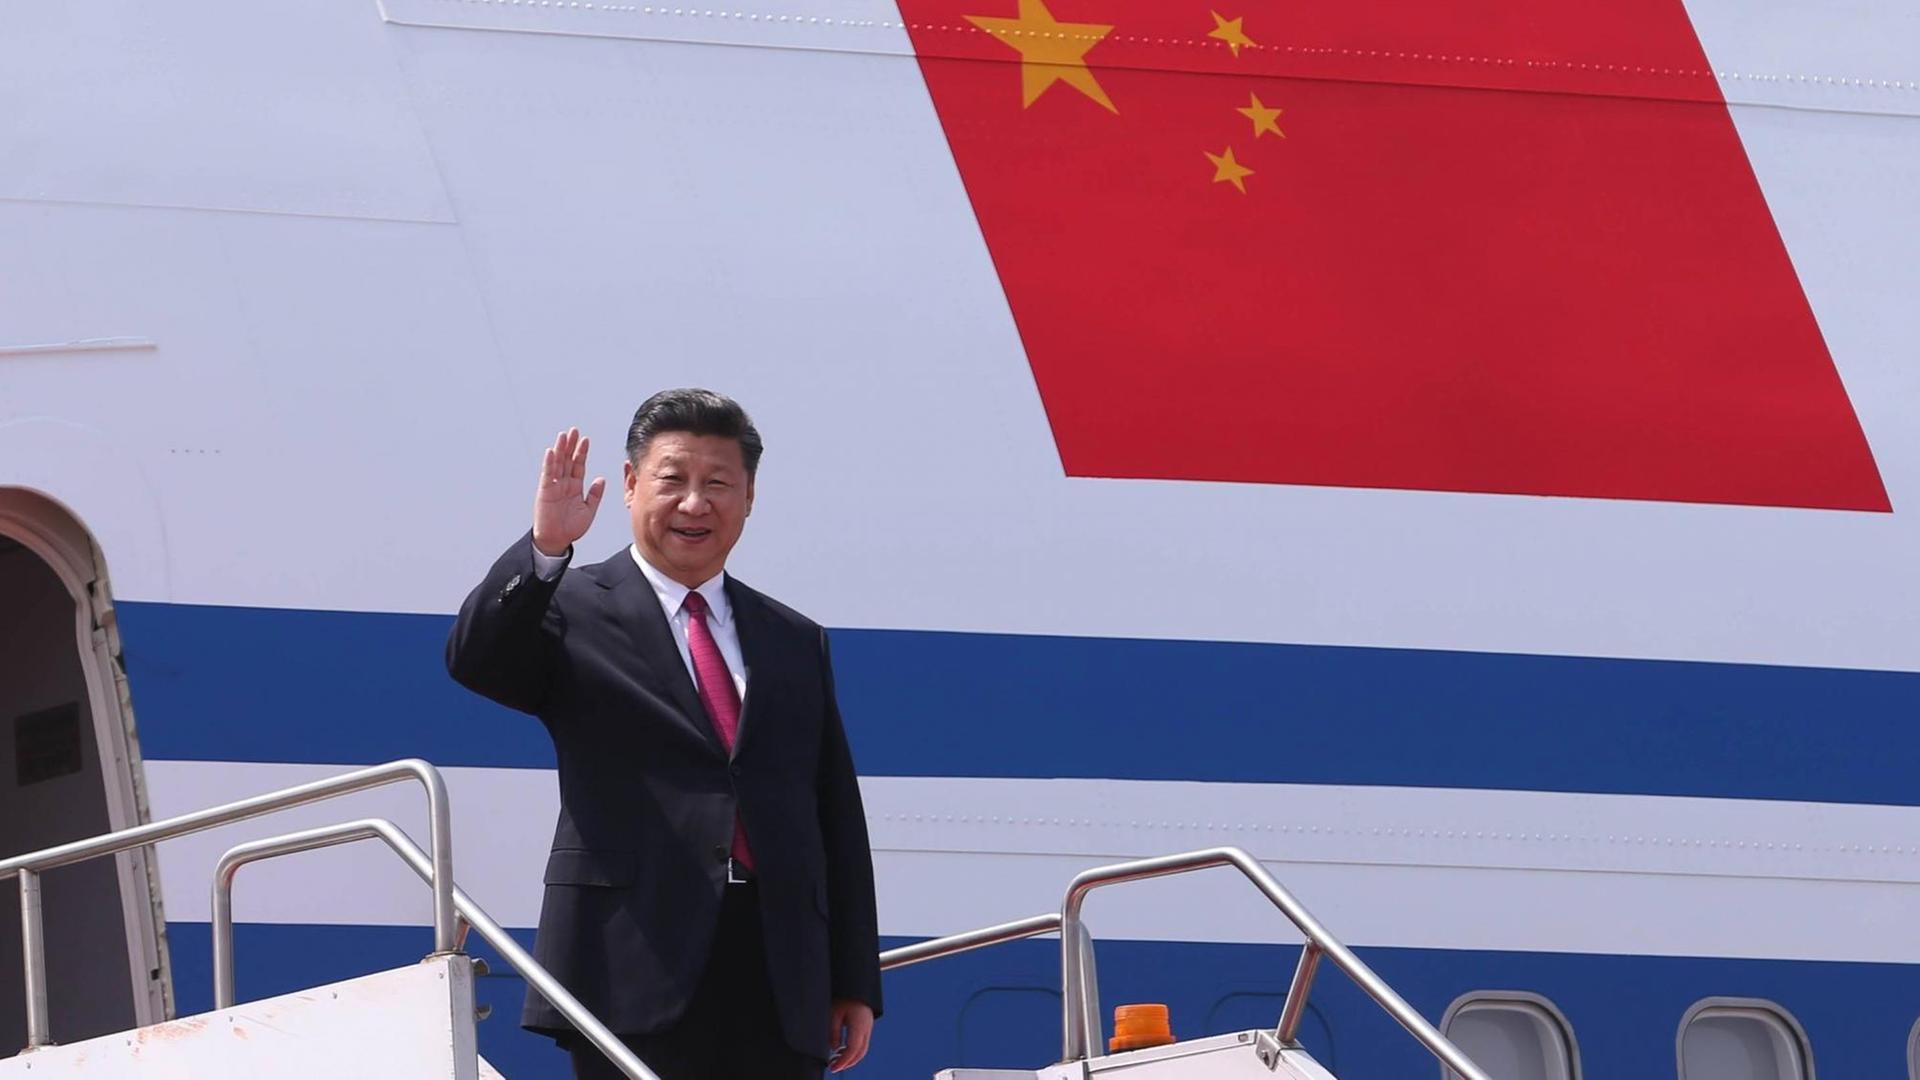 Chinas Präsident Xi Jinping steigt am Flughagen von Dhaka, Bangladesch aus dem Flugzeug.